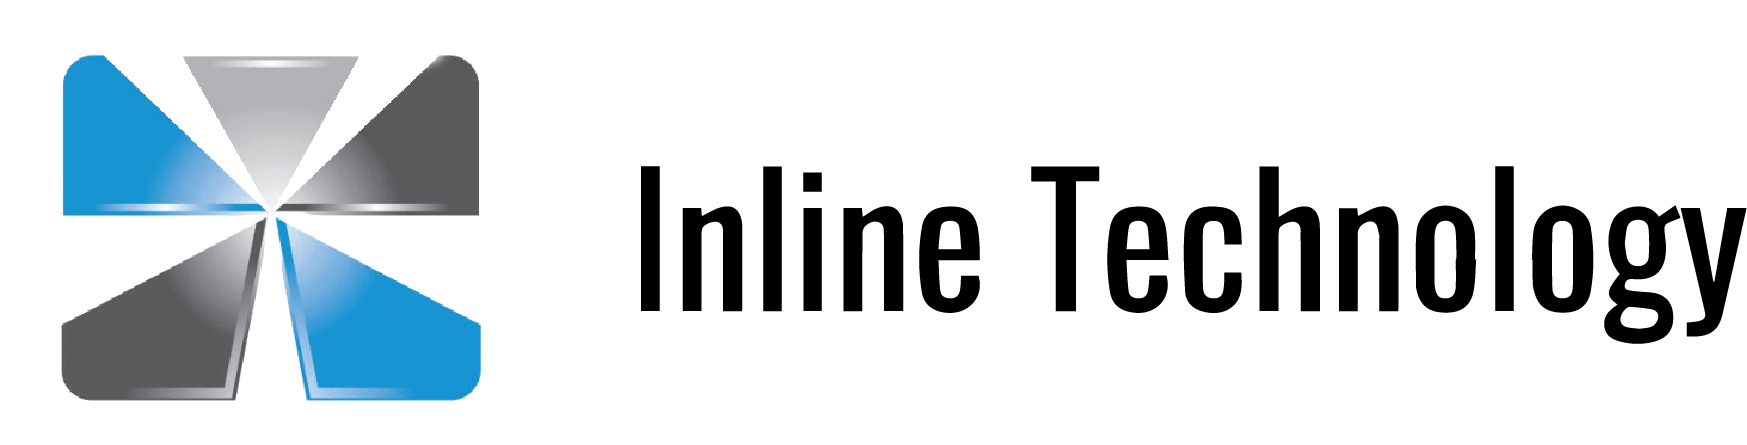 miota logo